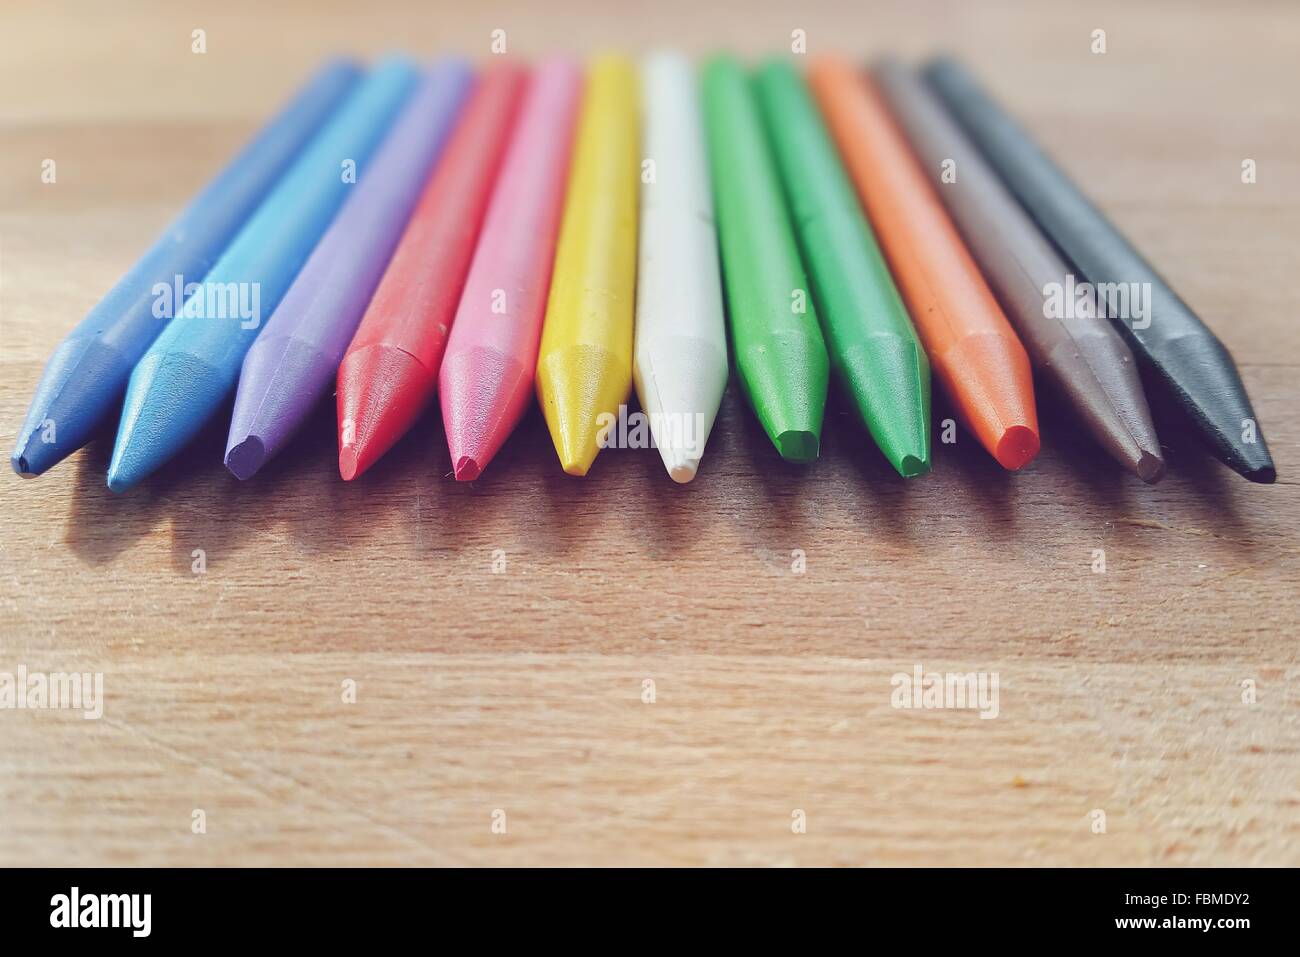 Douze crayons de couleur se trouvant sur la table Banque D'Images